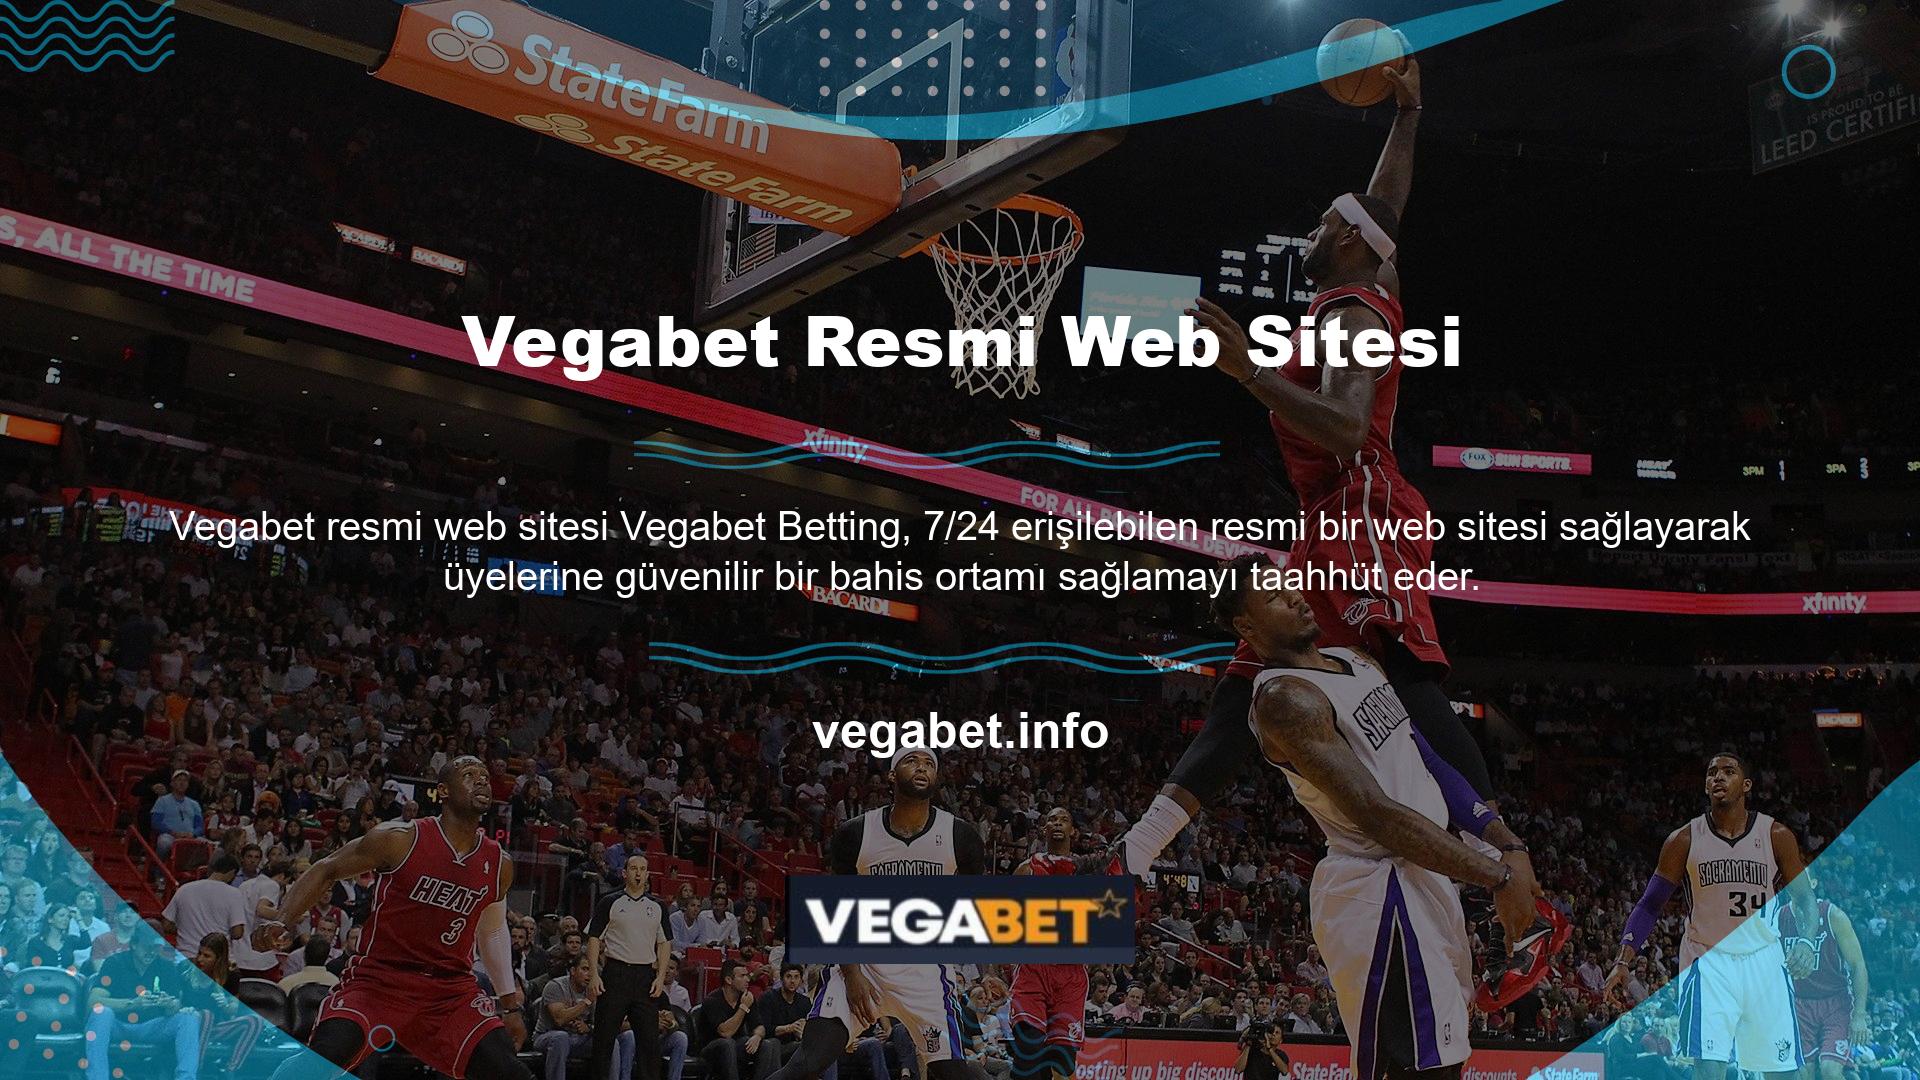 Resmi Vegabet sitesindeki bilgilere erişirken sitenin SNS hesabı kullanılabilir